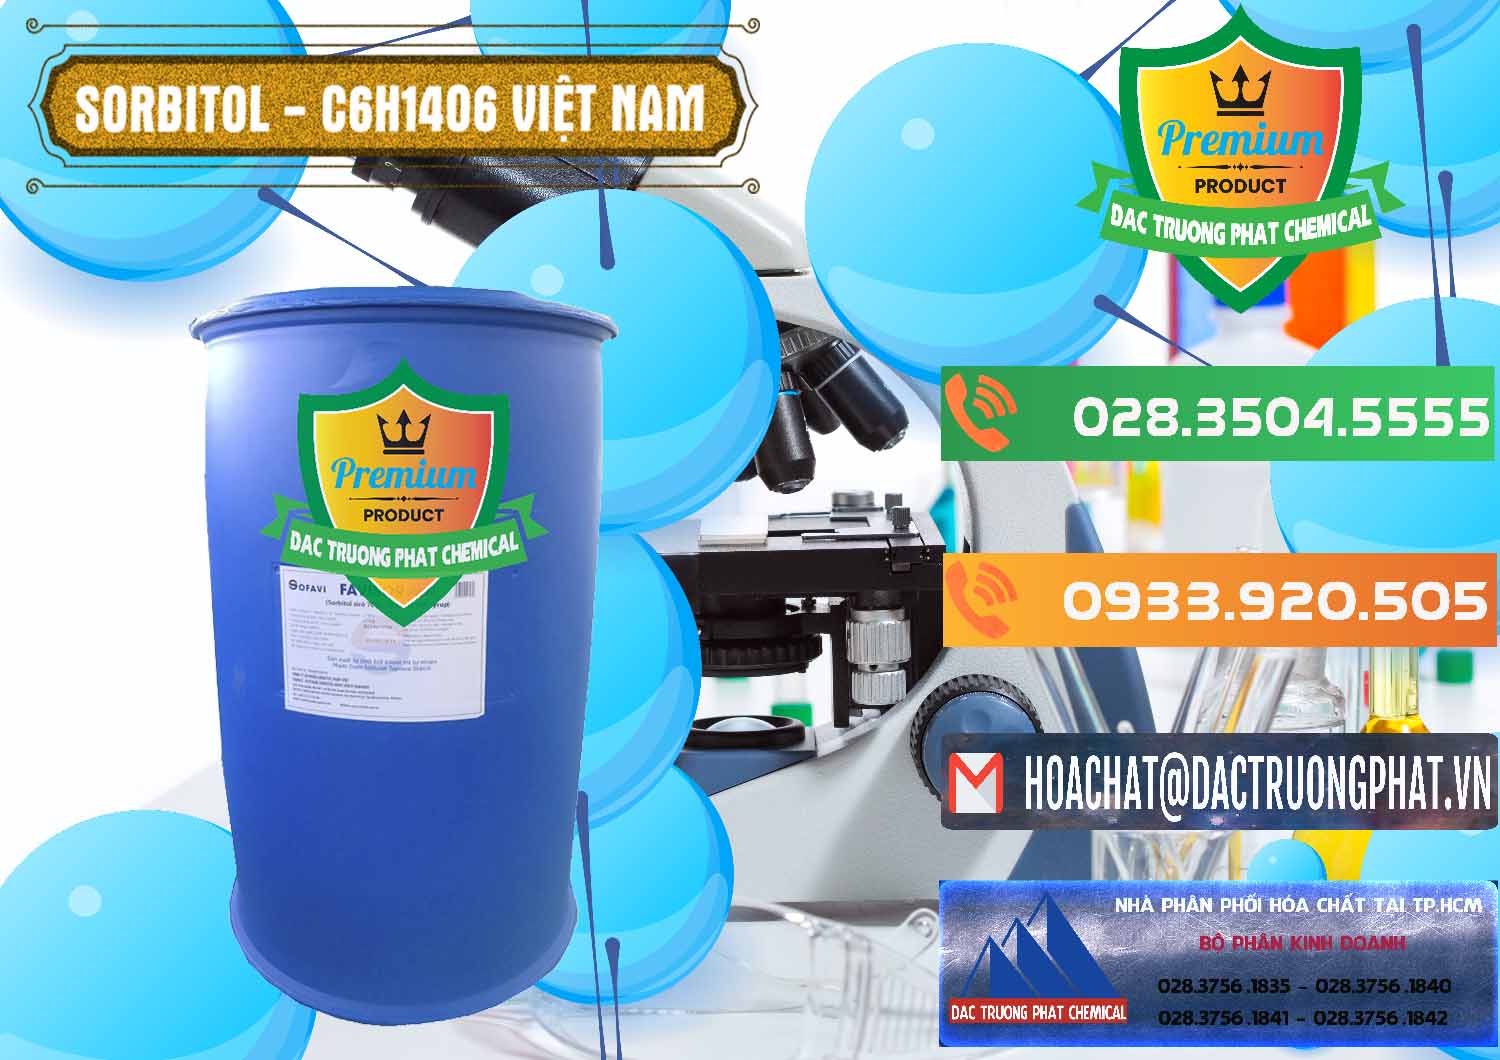 Đơn vị chuyên cung ứng - phân phối Sorbitol - C6H14O6 Lỏng 70% Food Grade Việt Nam - 0438 - Công ty kinh doanh - cung cấp hóa chất tại TP.HCM - hoachatxulynuoc.com.vn